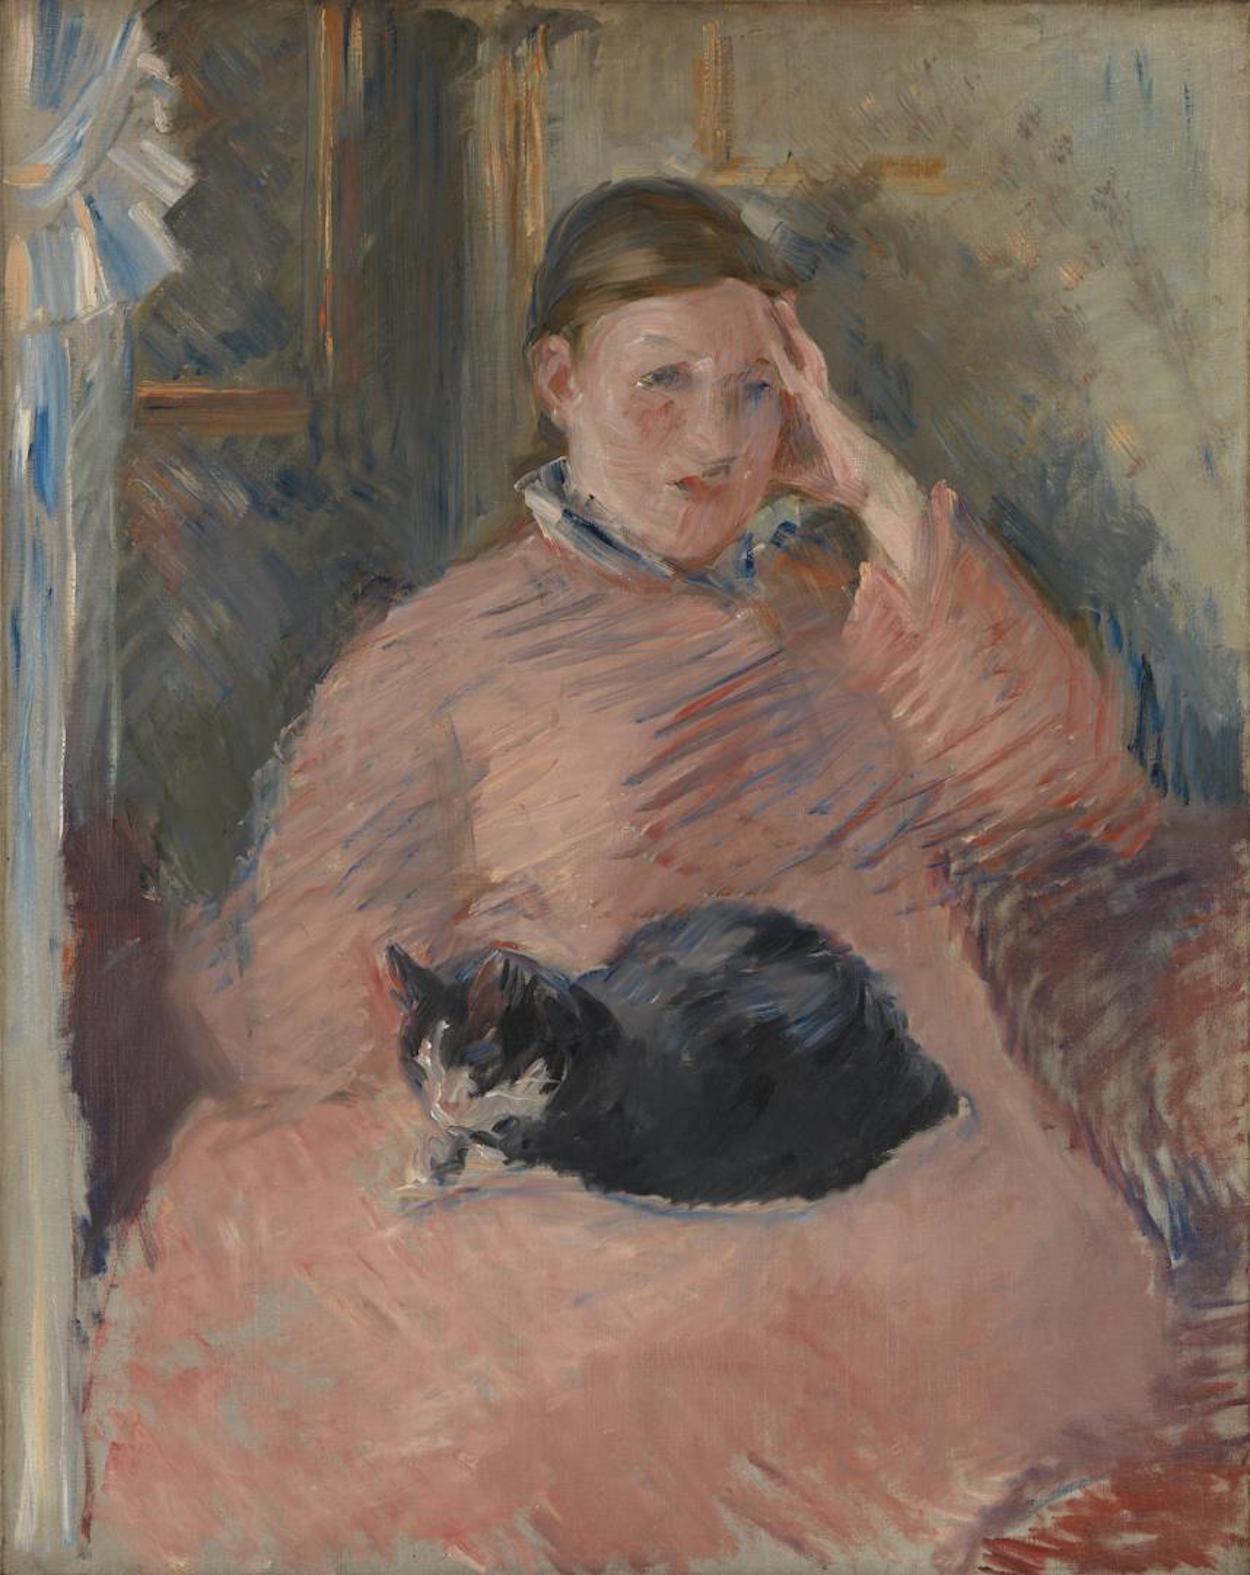 Vrouw met een kat by Edouard Manet - 1880-1882 - 92.1 × 73 cm 